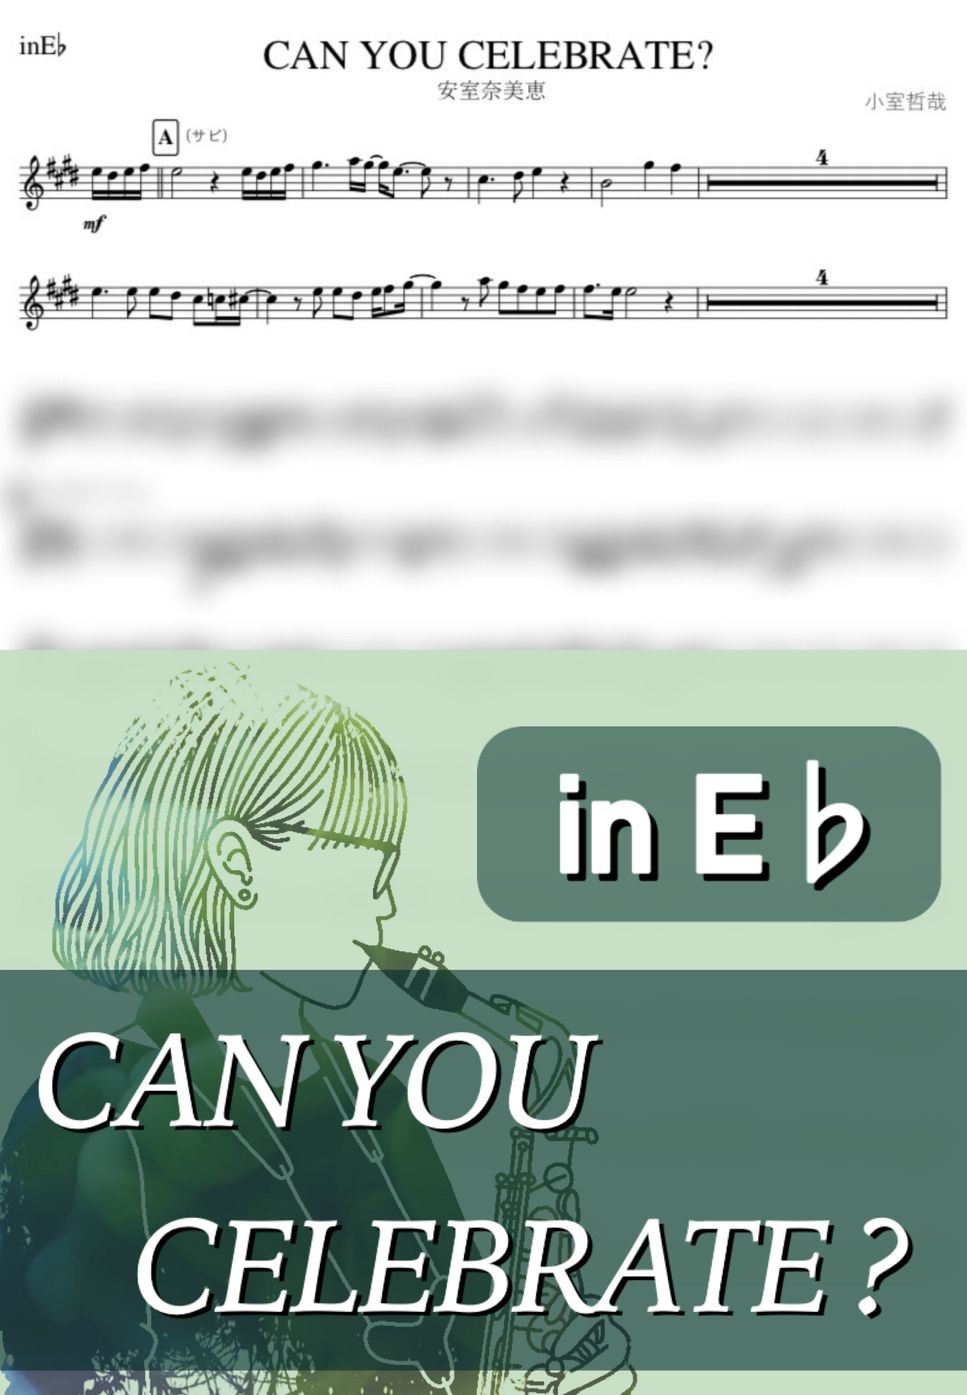 安室奈美恵 - CAN YOU CELEBRATE? (E♭) by kanamusic